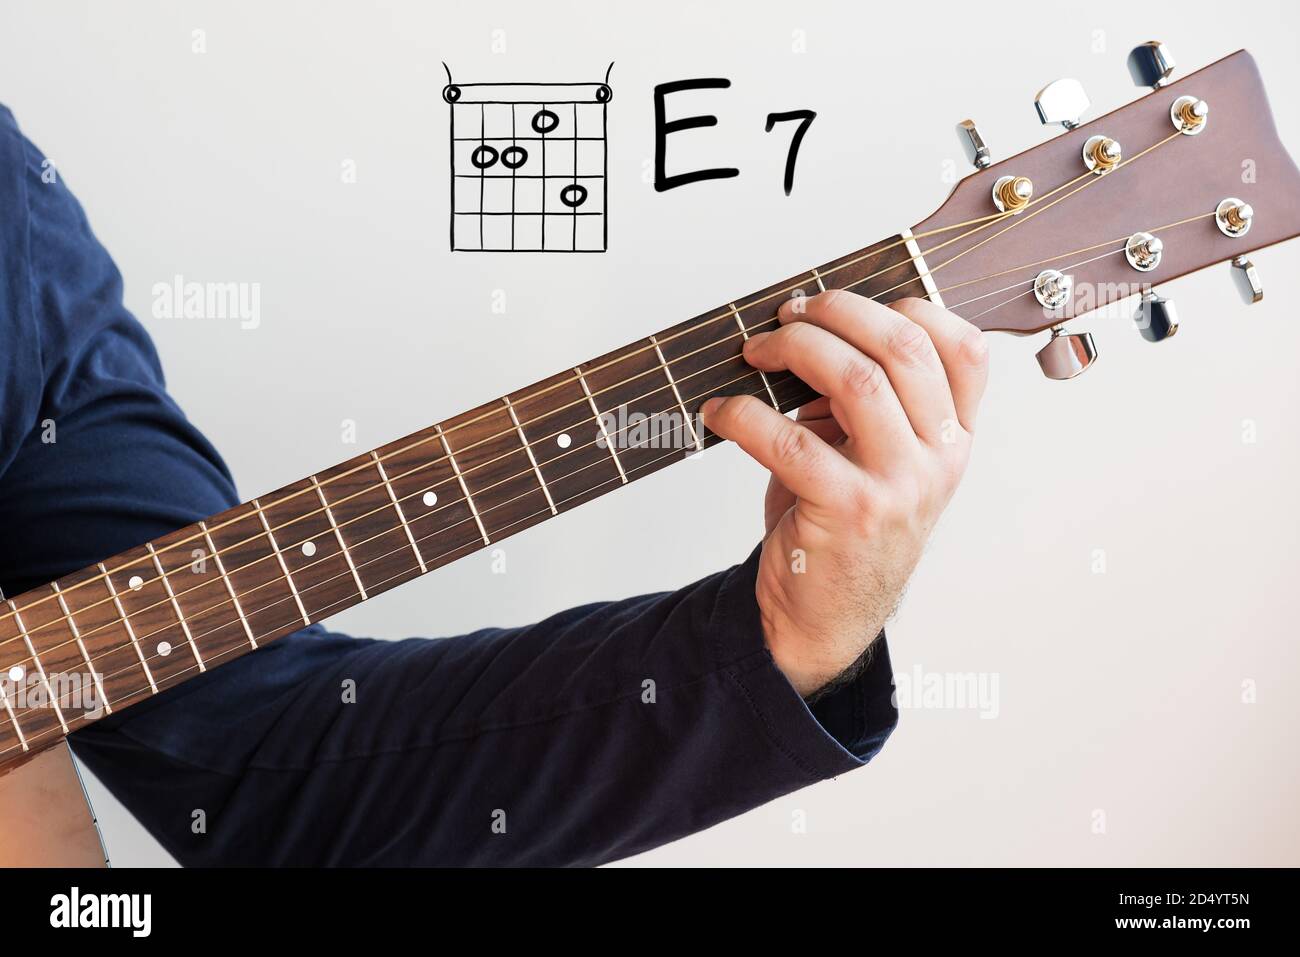 Gitarre lernen - Mann in einem dunkelblauen Hemd spielen Gitarre Akkorde  auf Whiteboard angezeigt, Chord E 7 Stockfotografie - Alamy